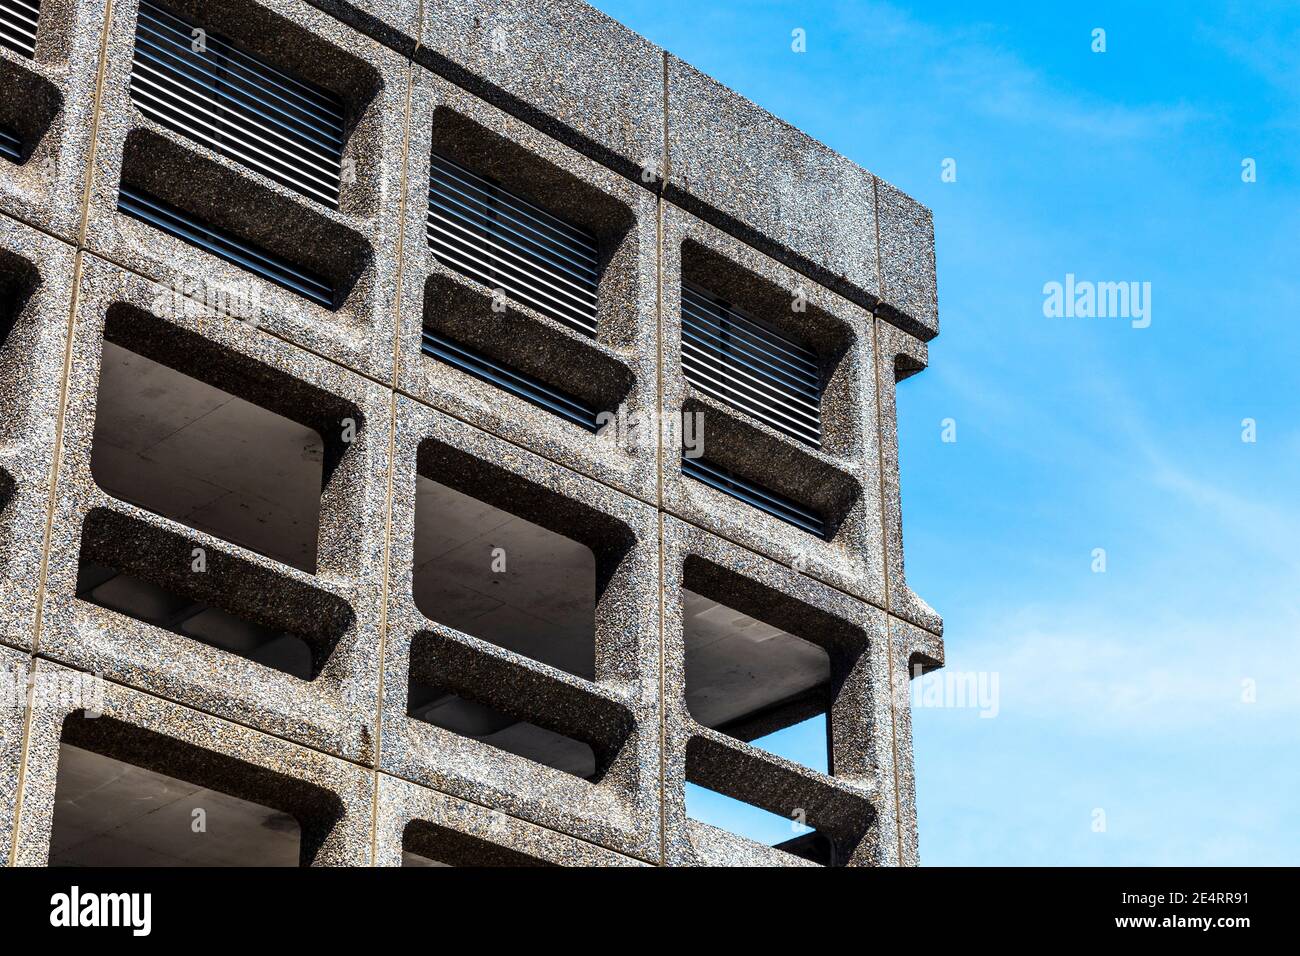 Architecture de style Brutaliste, Minories car Park à Londres, Royaume-Uni Banque D'Images